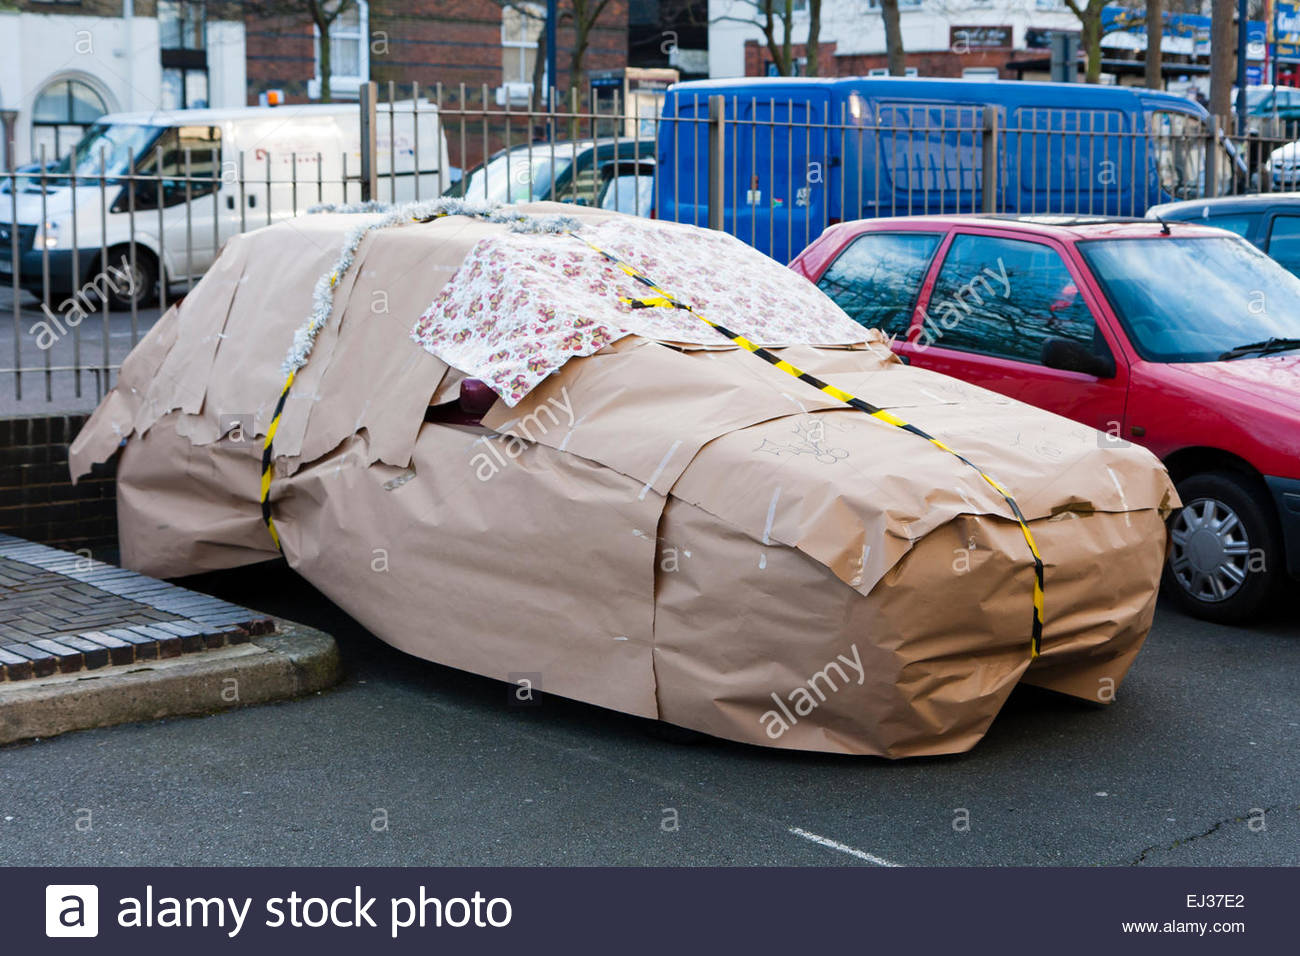 england-car-in-car-park-wrapped-up-as-secret-santa-christmas-present-EJ37E2.jpg